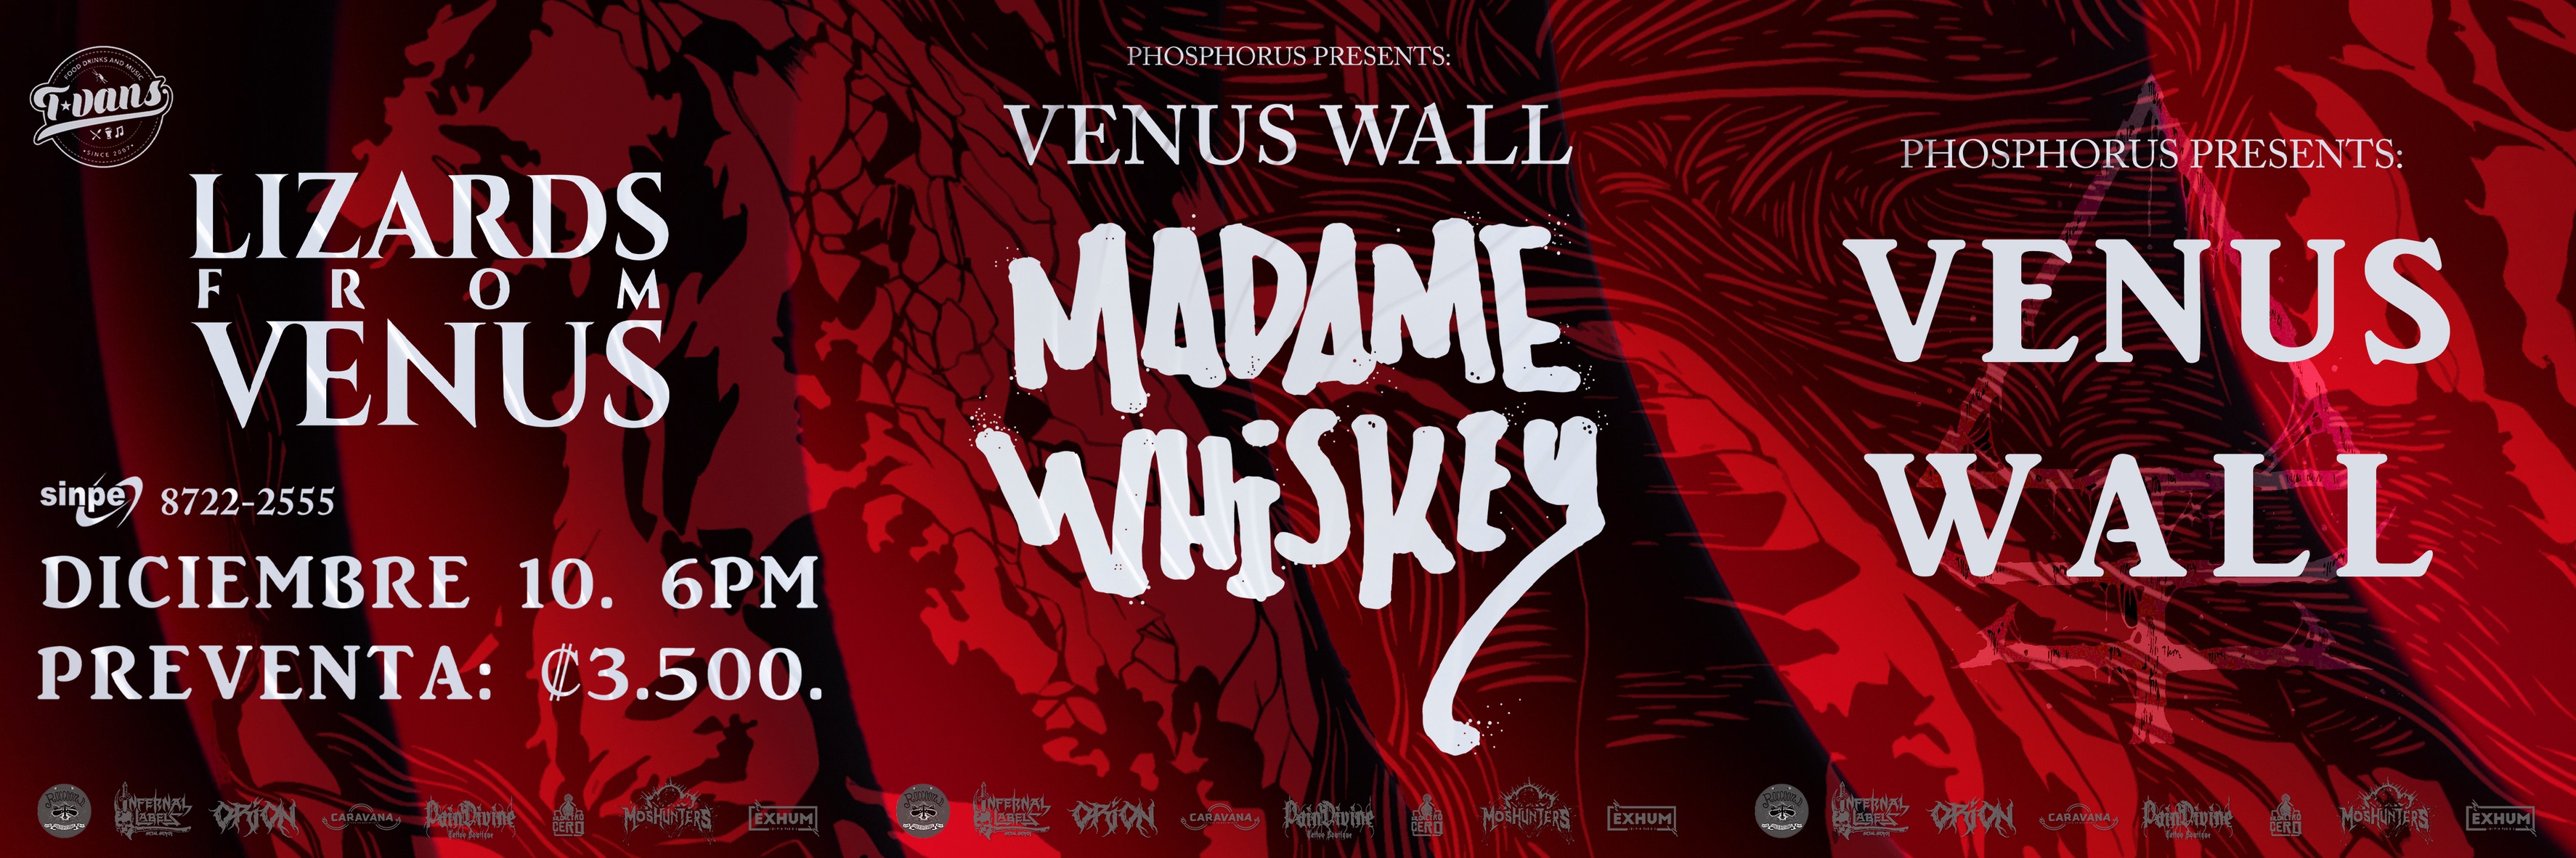 Venus Wall : Madame Whiskey + Lizards from Venus / T-Vans